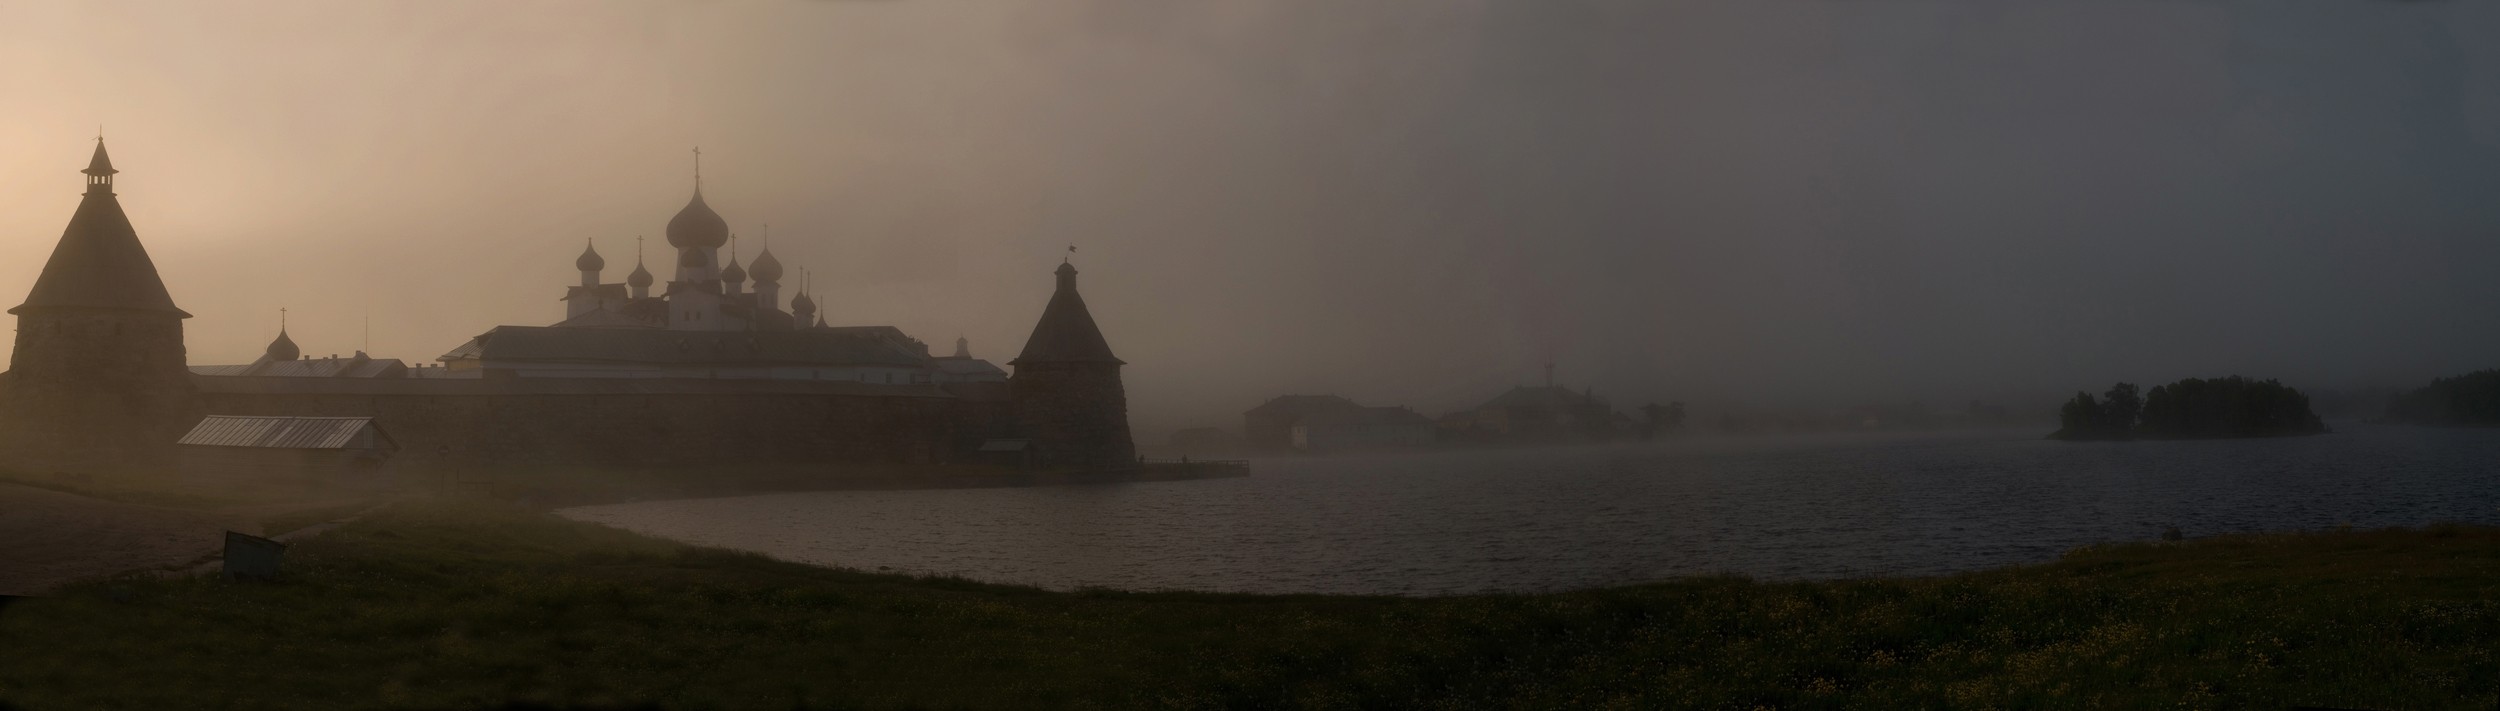 Монастырь. На рассвете. Туман, холодно и красиво.